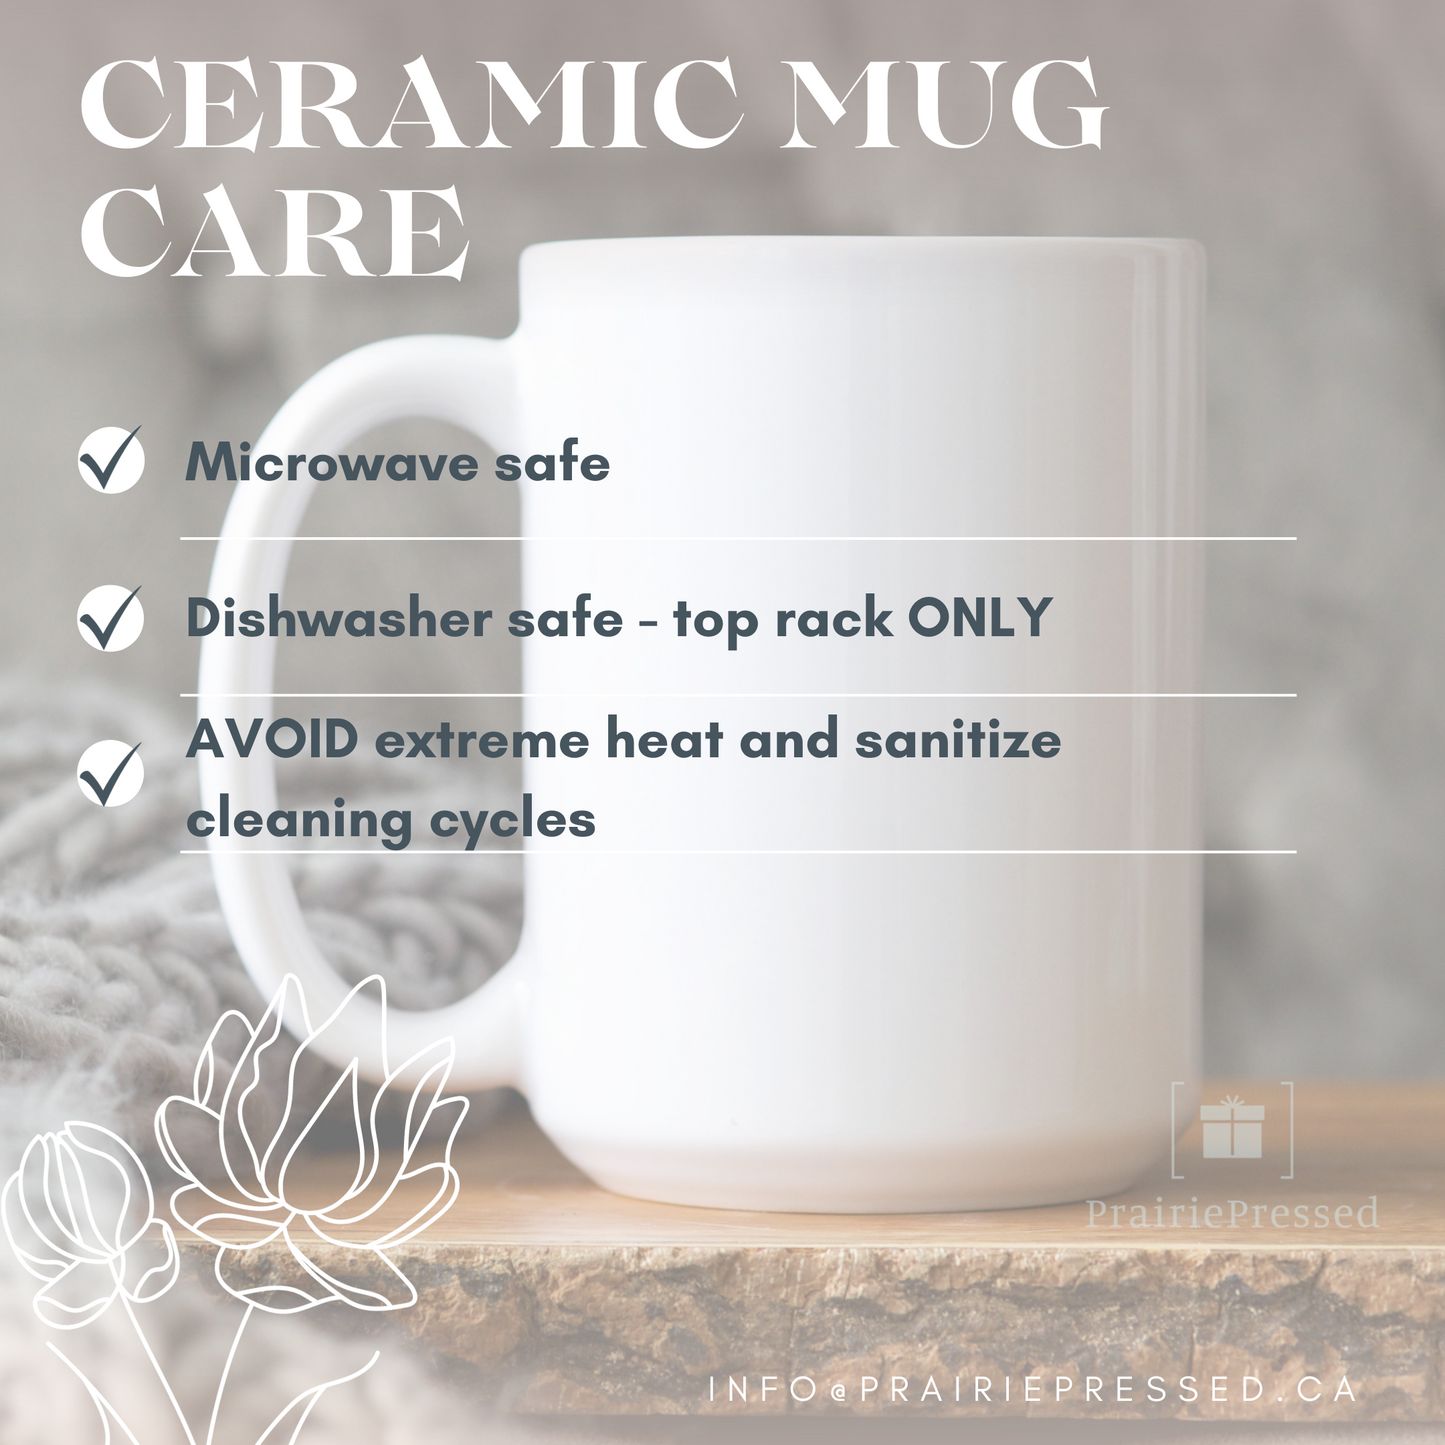 Aunt Uncle Est. 2024 Ceramic Mug Set